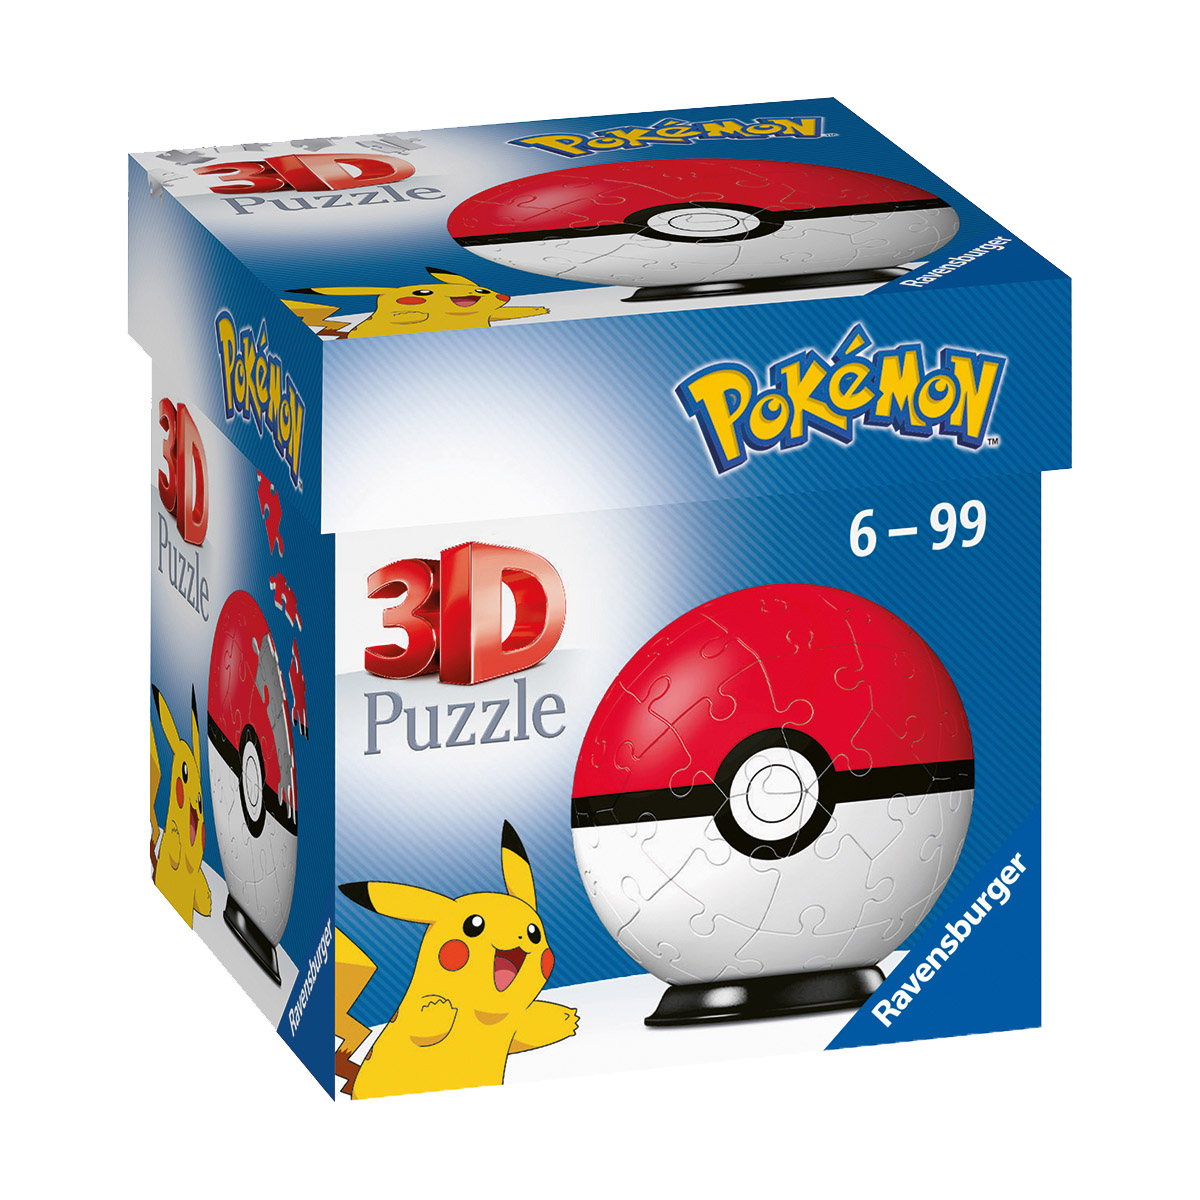 Puzzle 3D Pokéball Pokémon, 54 pezzi - Pokémon, Ravensburger